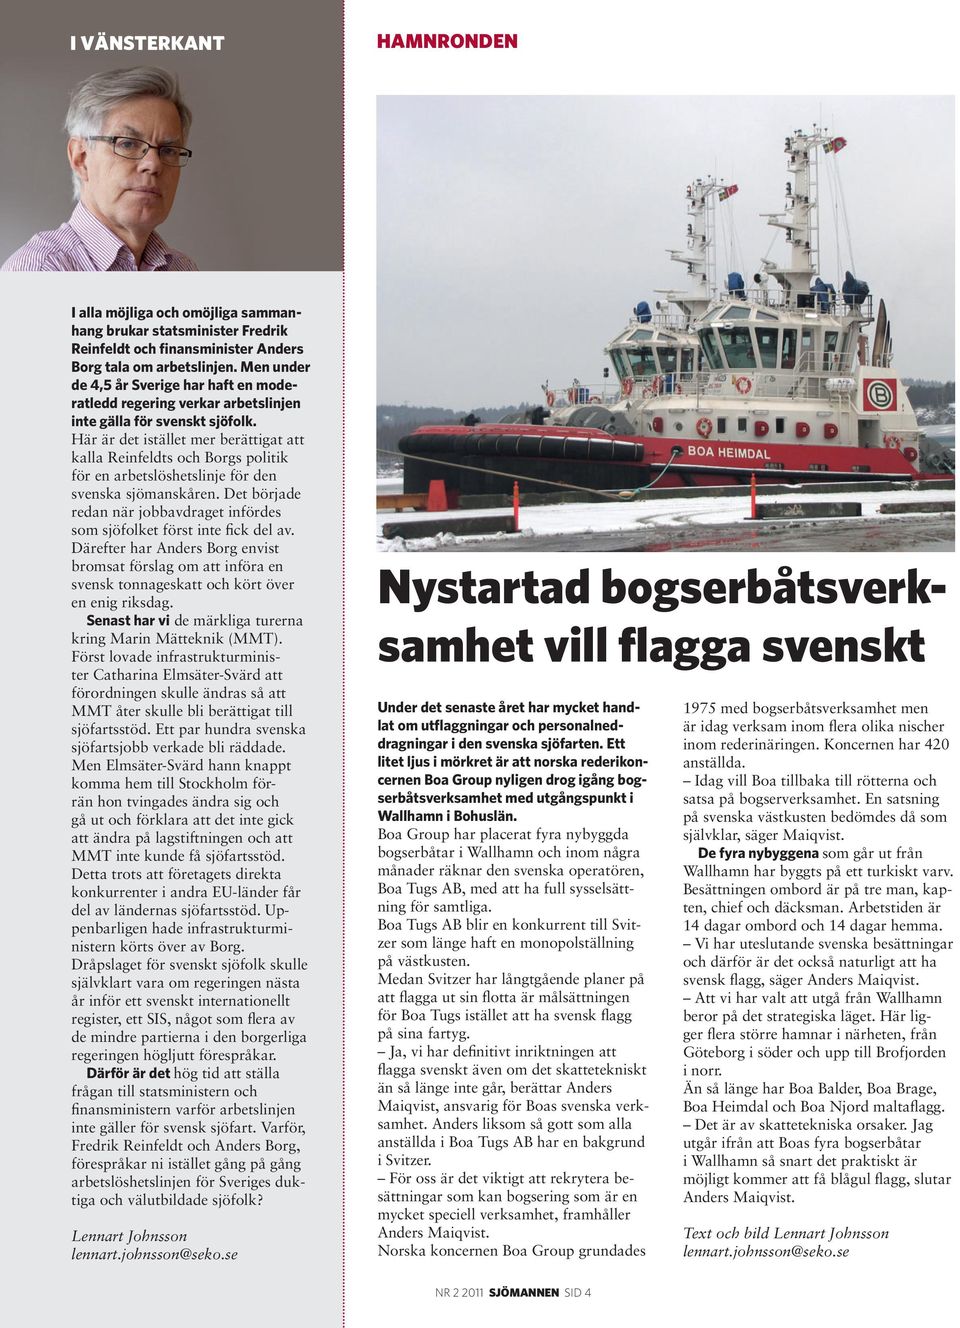 Här är det istället mer berättigat att kalla Reinfeldts och Borgs politik för en arbetslöshetslinje för den svenska sjömanskåren.